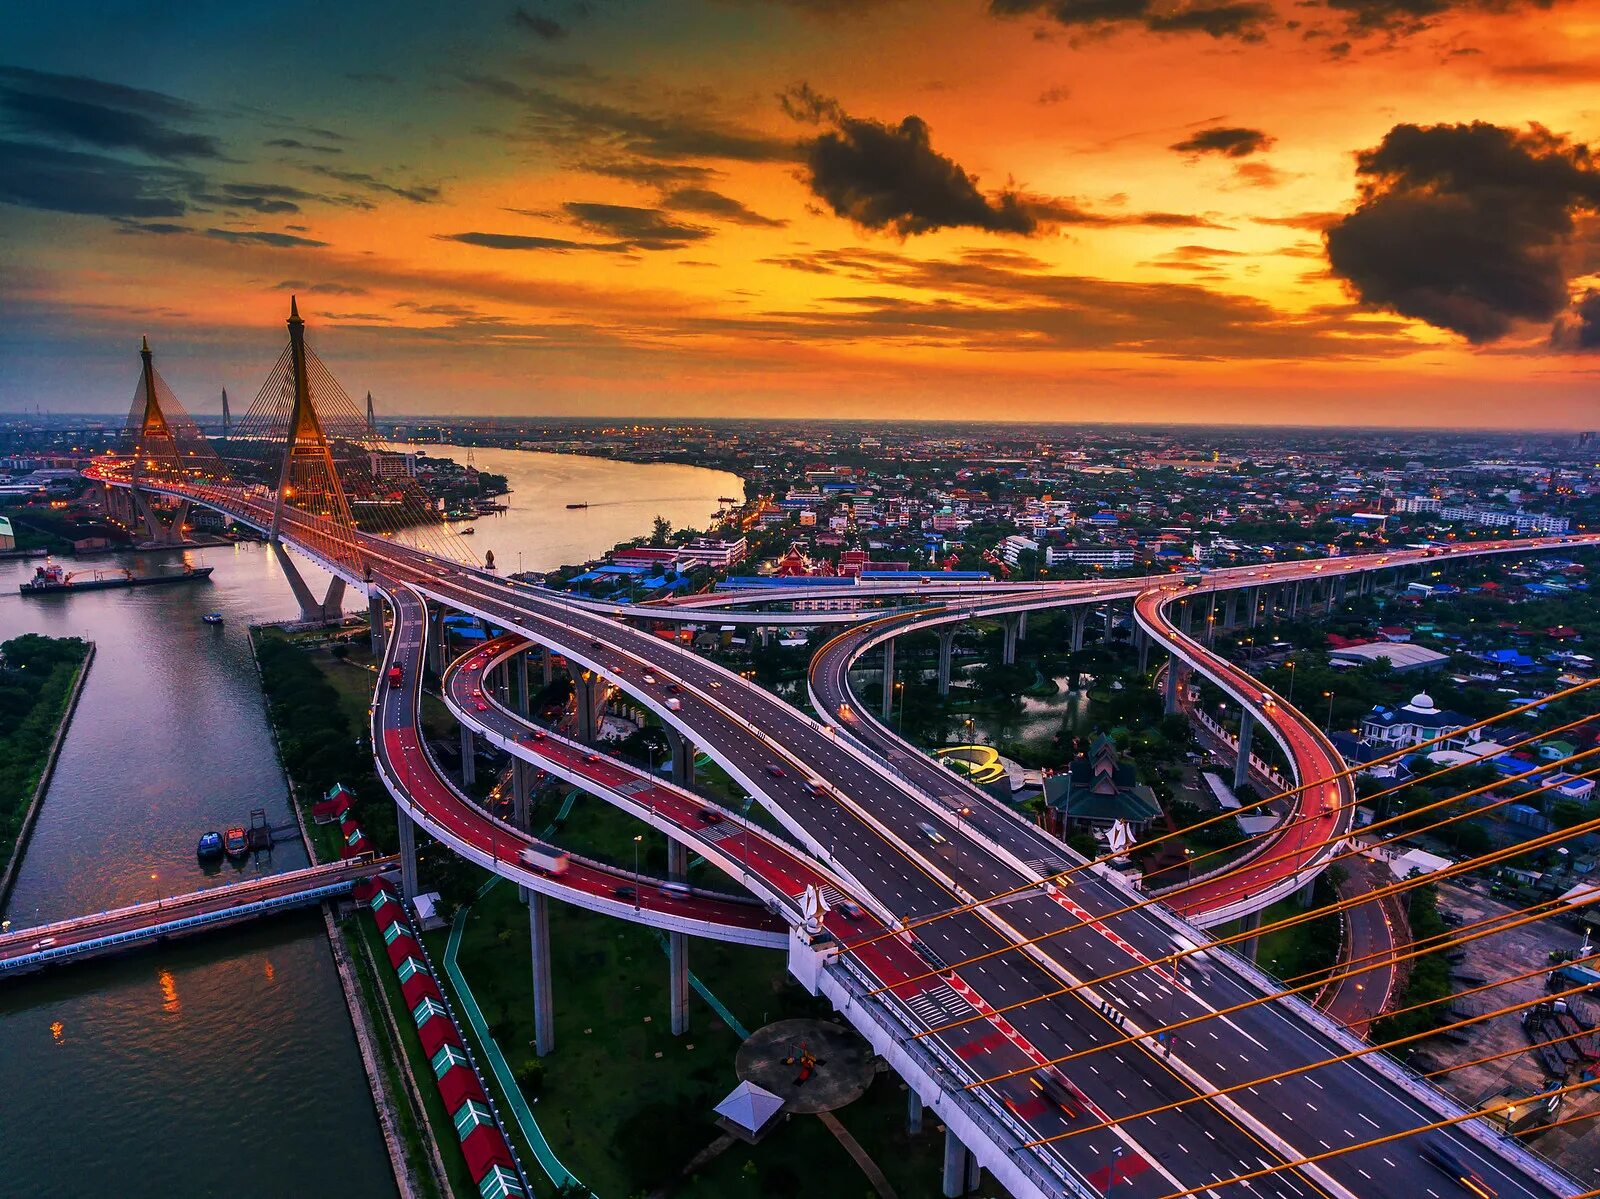 Мост в Бангкоке. Мост Дипангкорн Расмийоти, Бангкок, Таиланд. Квантовый мост Бангкок. Двойной мост Бхумибол Бангкок.